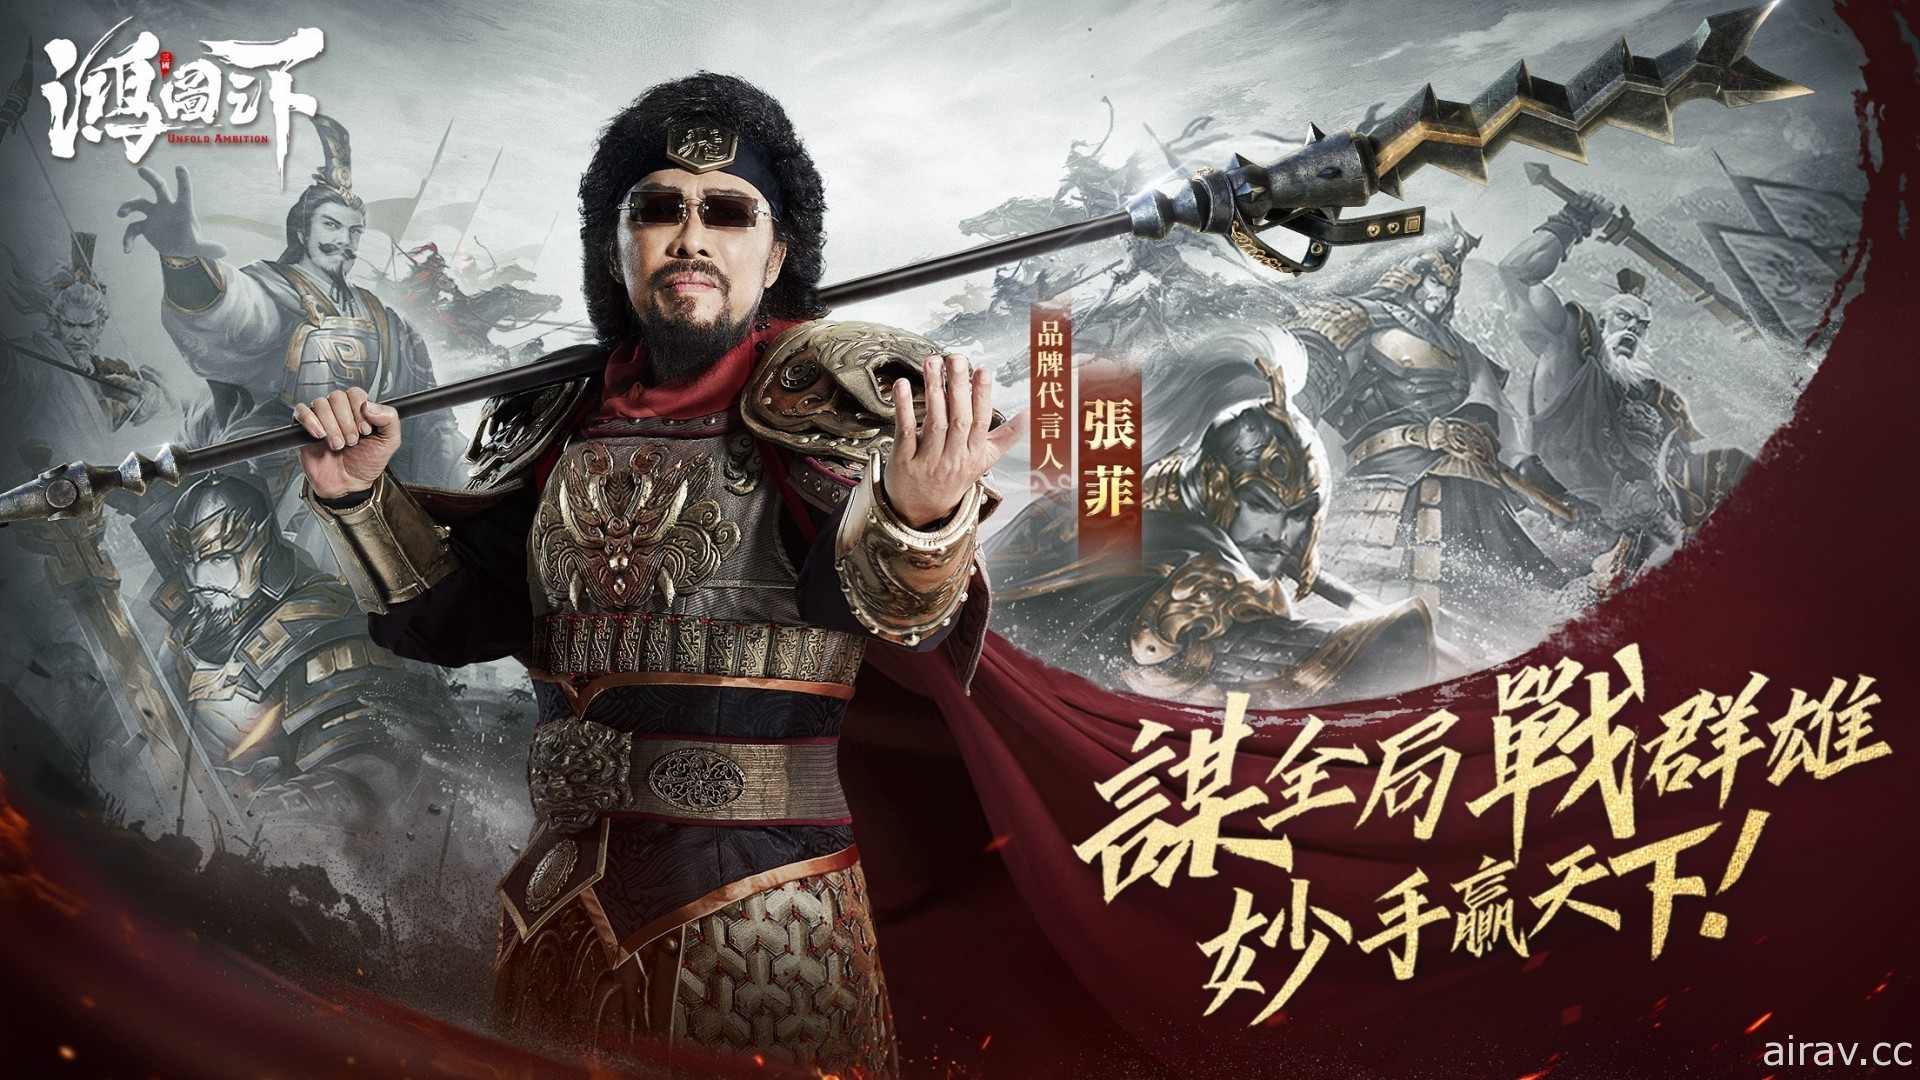 《鸿图之下》公布游戏代言人为“张菲” 化身蜀国五虎将之一“张飞”拍摄宣传影片